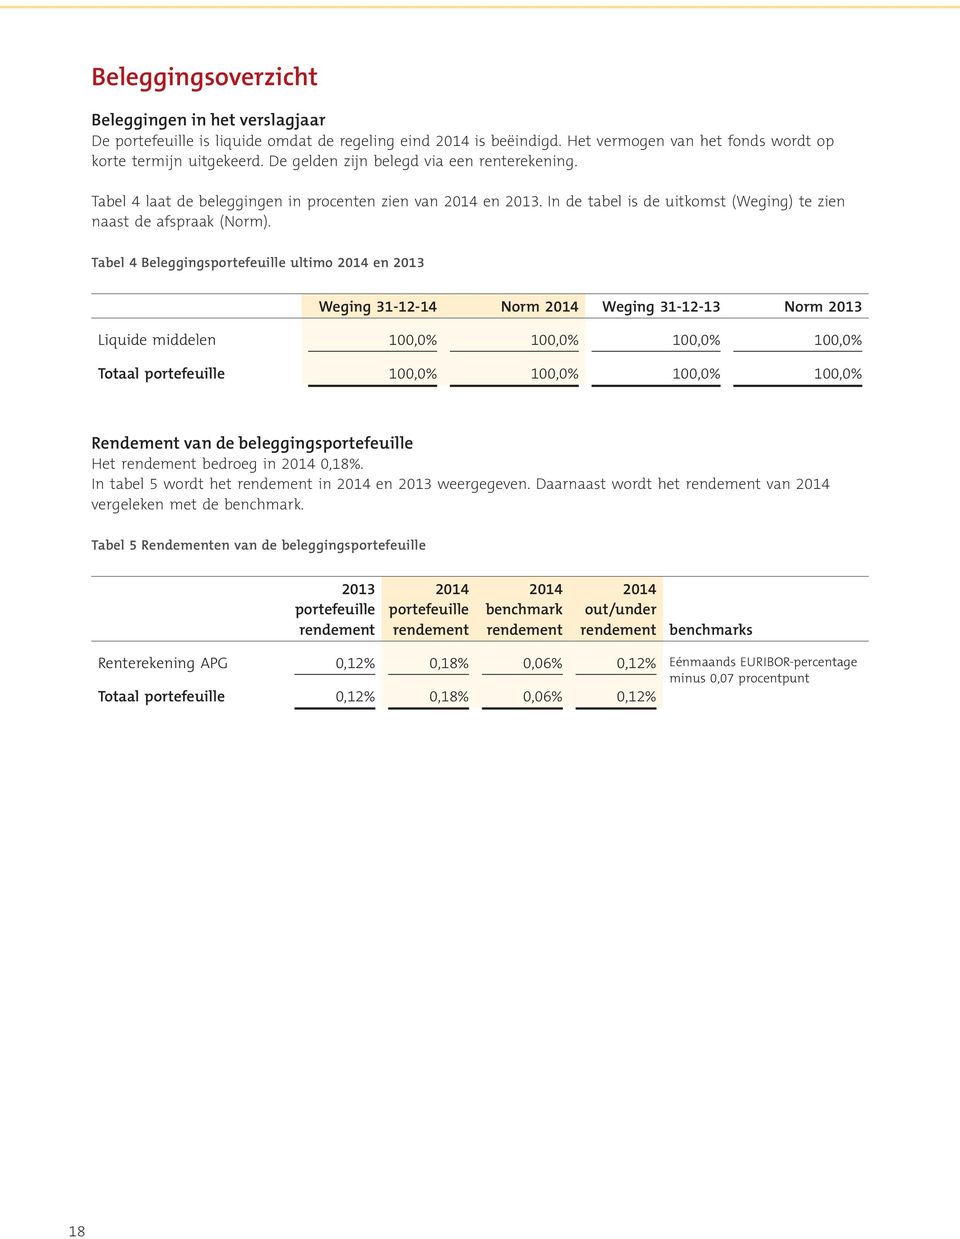 Tabel 4 Beleggingsportefeuille ultimo 2014 en 2013 Weging 31-12-14 Norm 2014 Weging 31-12-13 Norm 2013 Liquide middelen 100,0% 100,0% 100,0% 100,0% Totaal portefeuille 100,0% 100,0% 100,0% 100,0%